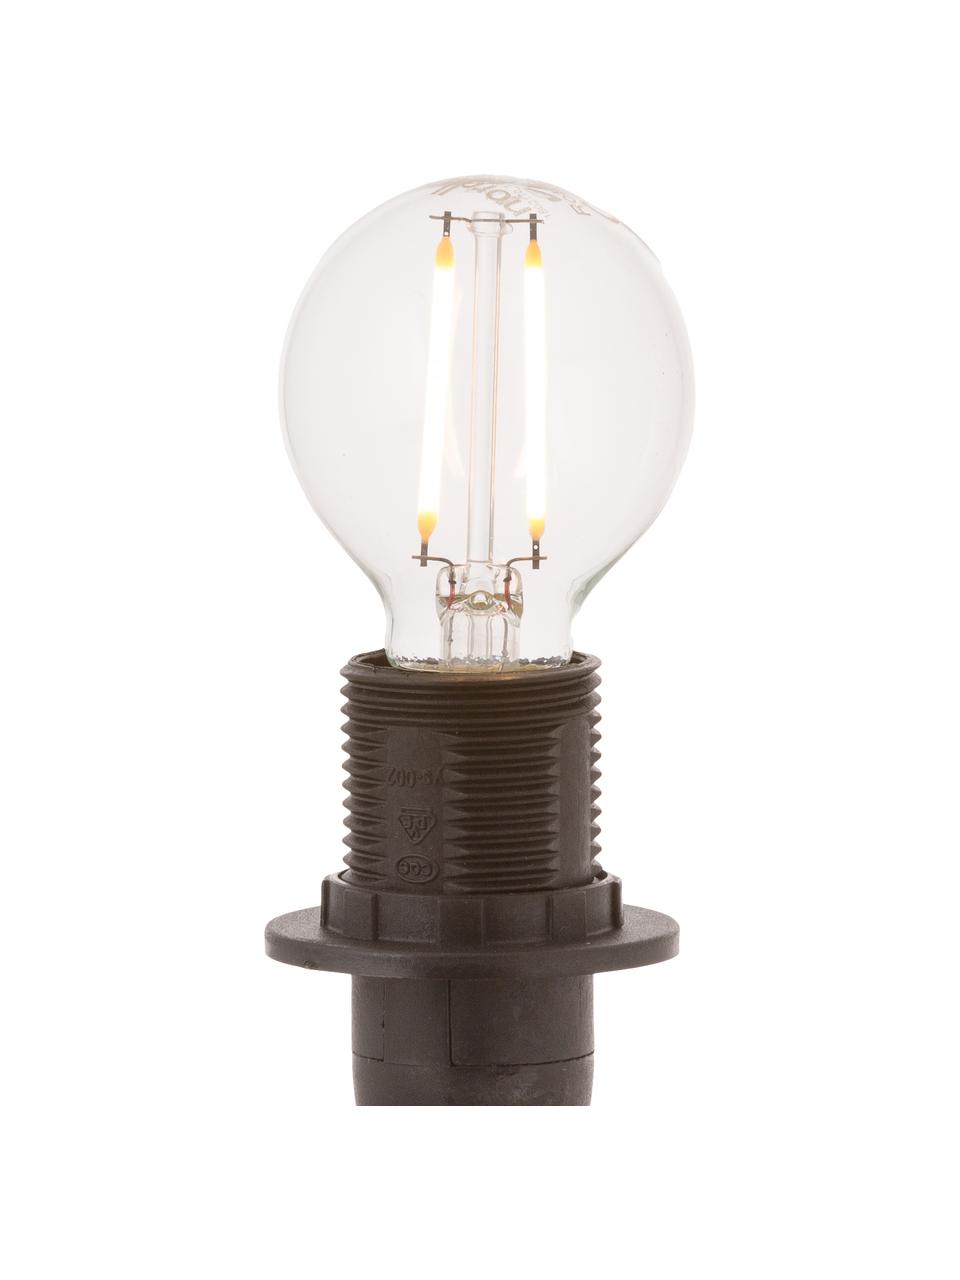 LED lamp Yekon (E14 / 2W) 5 stuks, Peertje: glas, Fitting: aluminium, Transparant, Ø 5 x H 8 cm